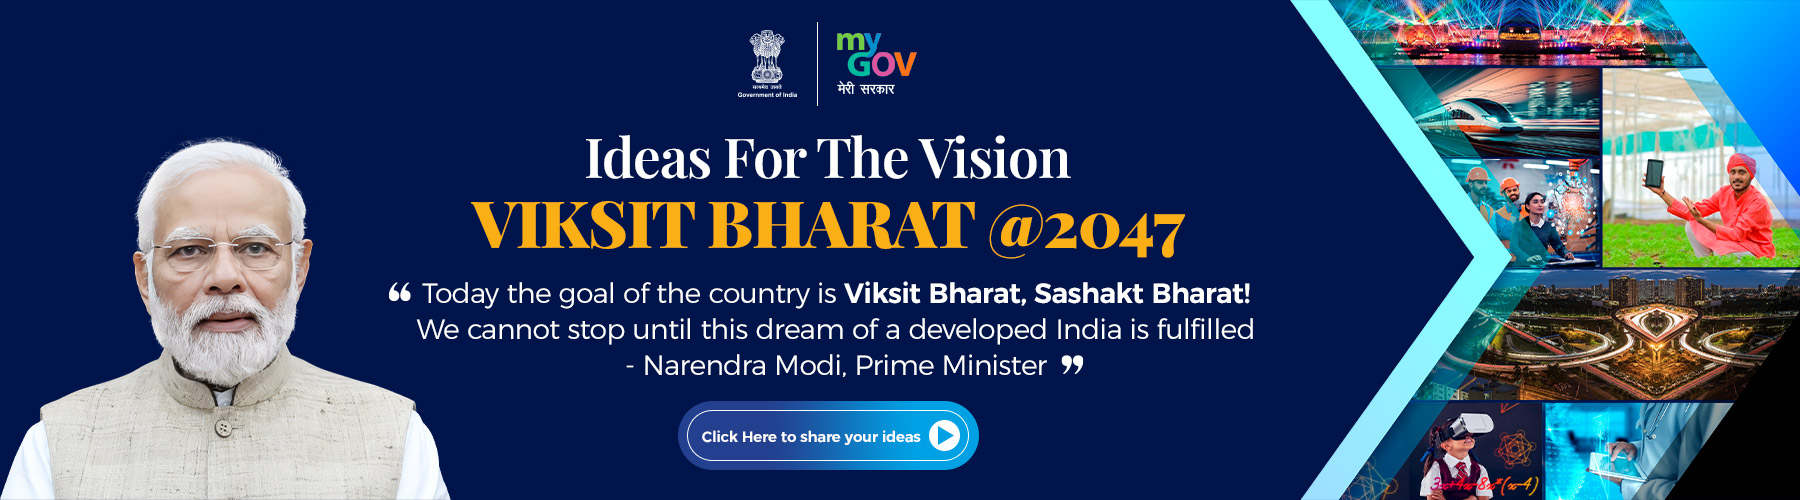 व्हिजन विकसित भारत@2047 साठी कल्पना